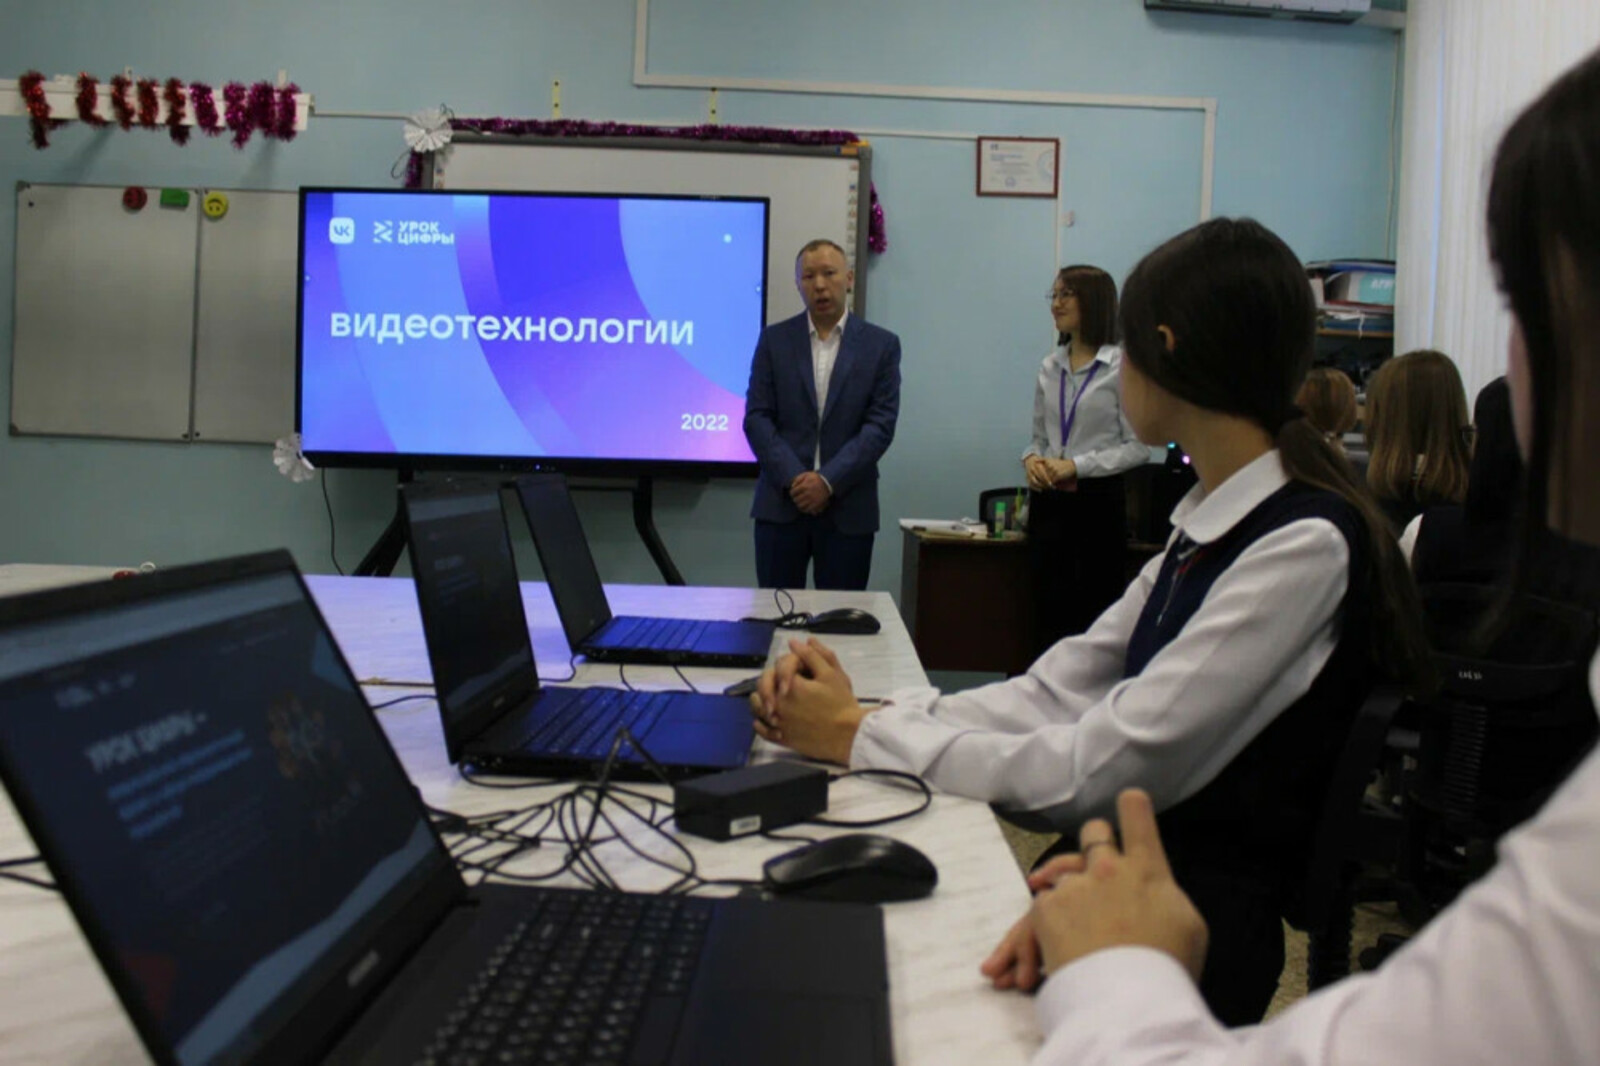 В Башкортостане состоялся открытый «Урок цифры» от VK о видеотехнологиях